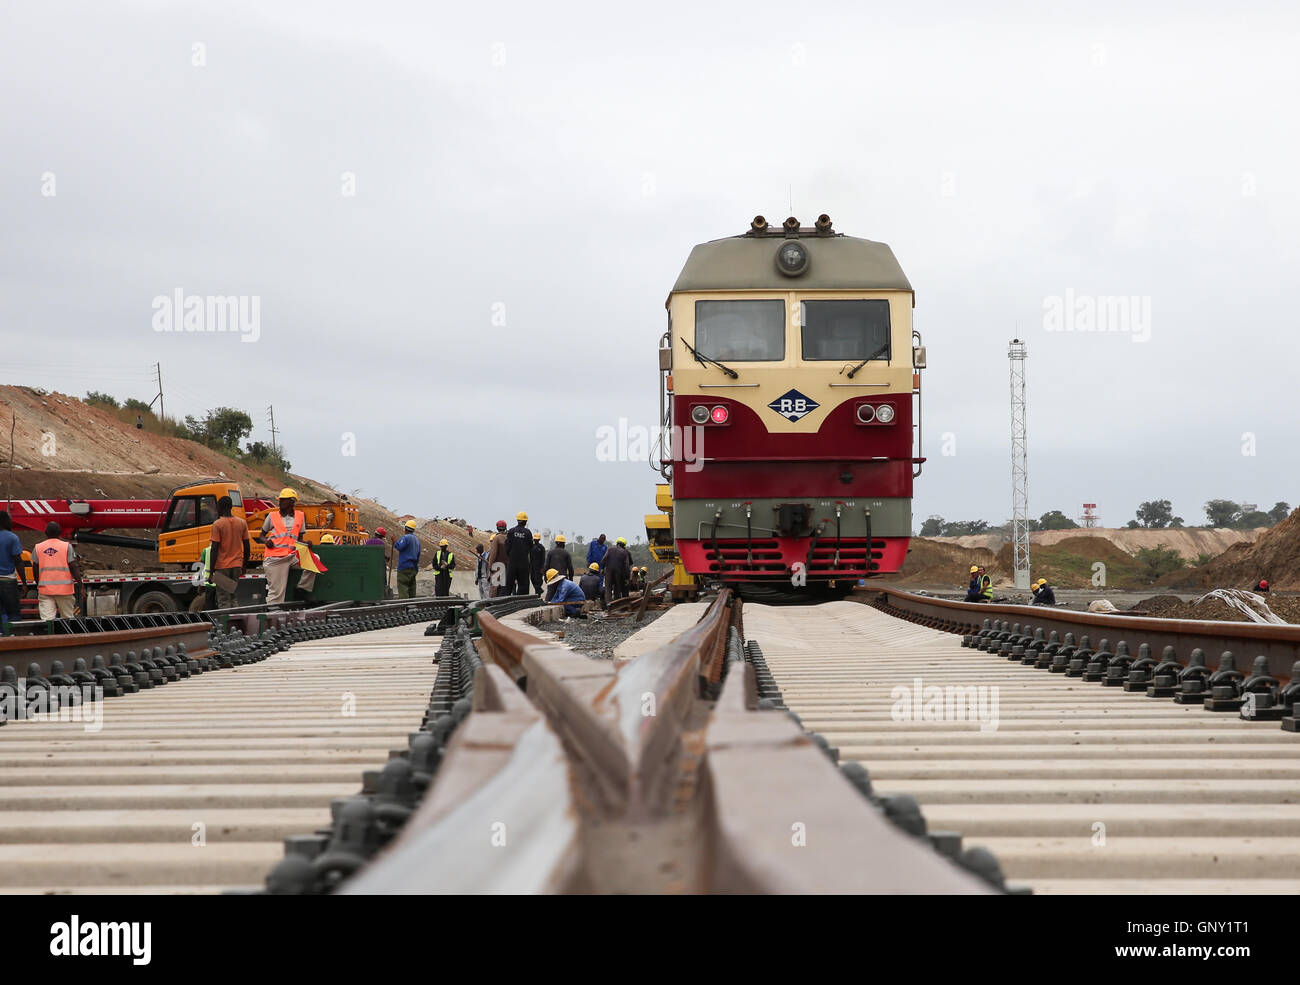 Железные дороги африки. Железная дорога Джибути Аддис Абеба. Железная дорога Аддис-Абеба Эфиопия Джибути. Железные дороги ЮАР. Поезда в Африке.